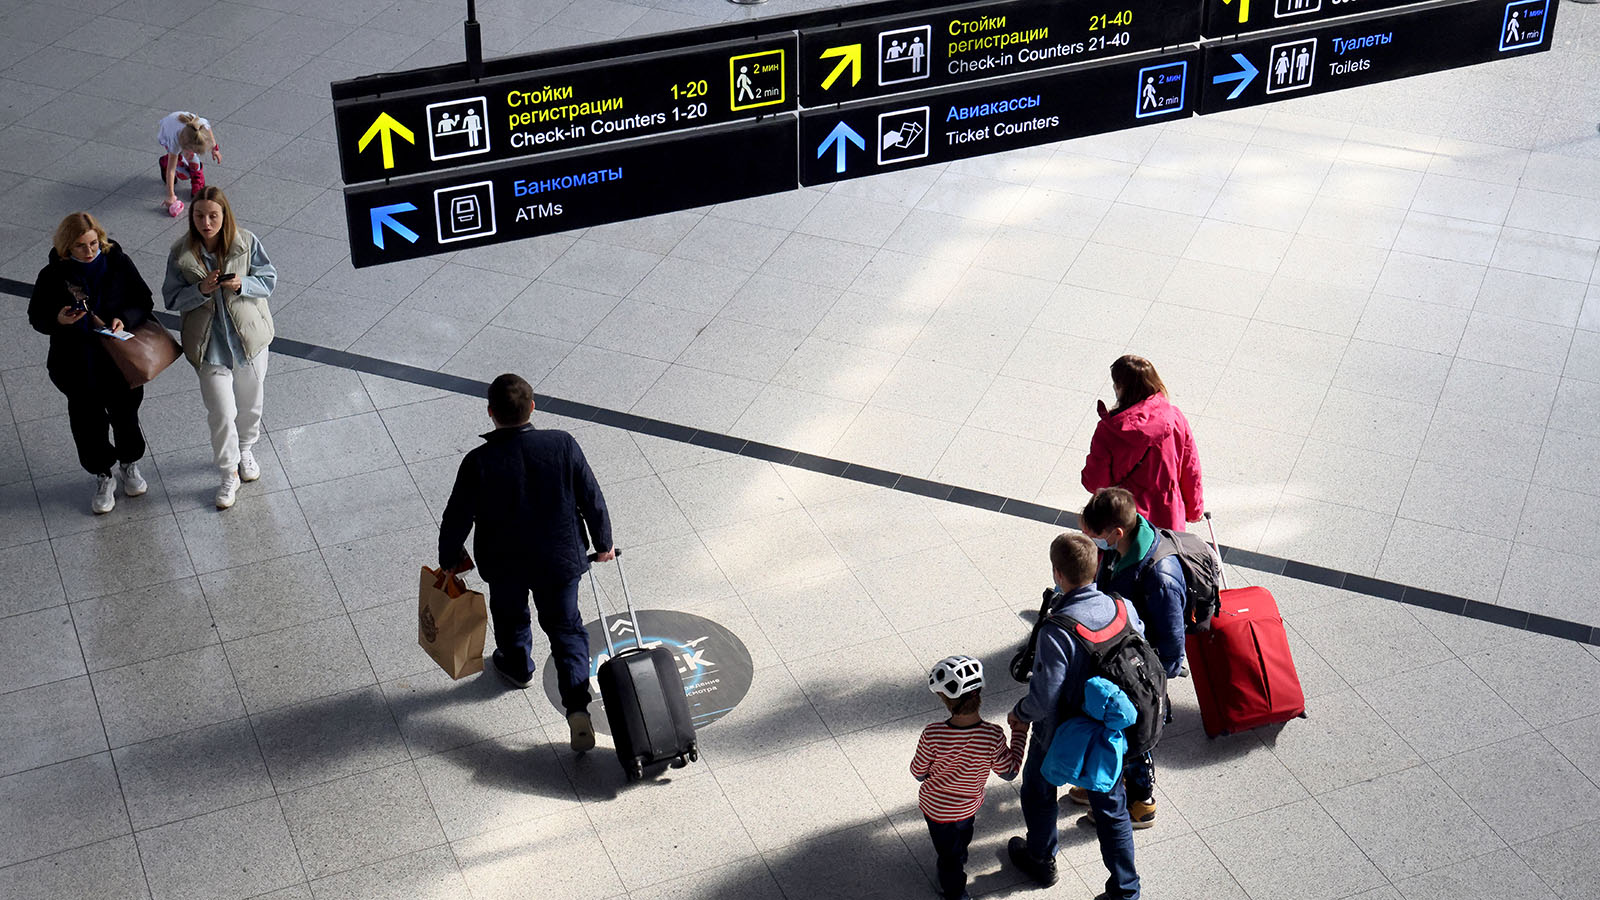 Rusya'da havaalanlarına biletsiz giriş yasaklanabilir